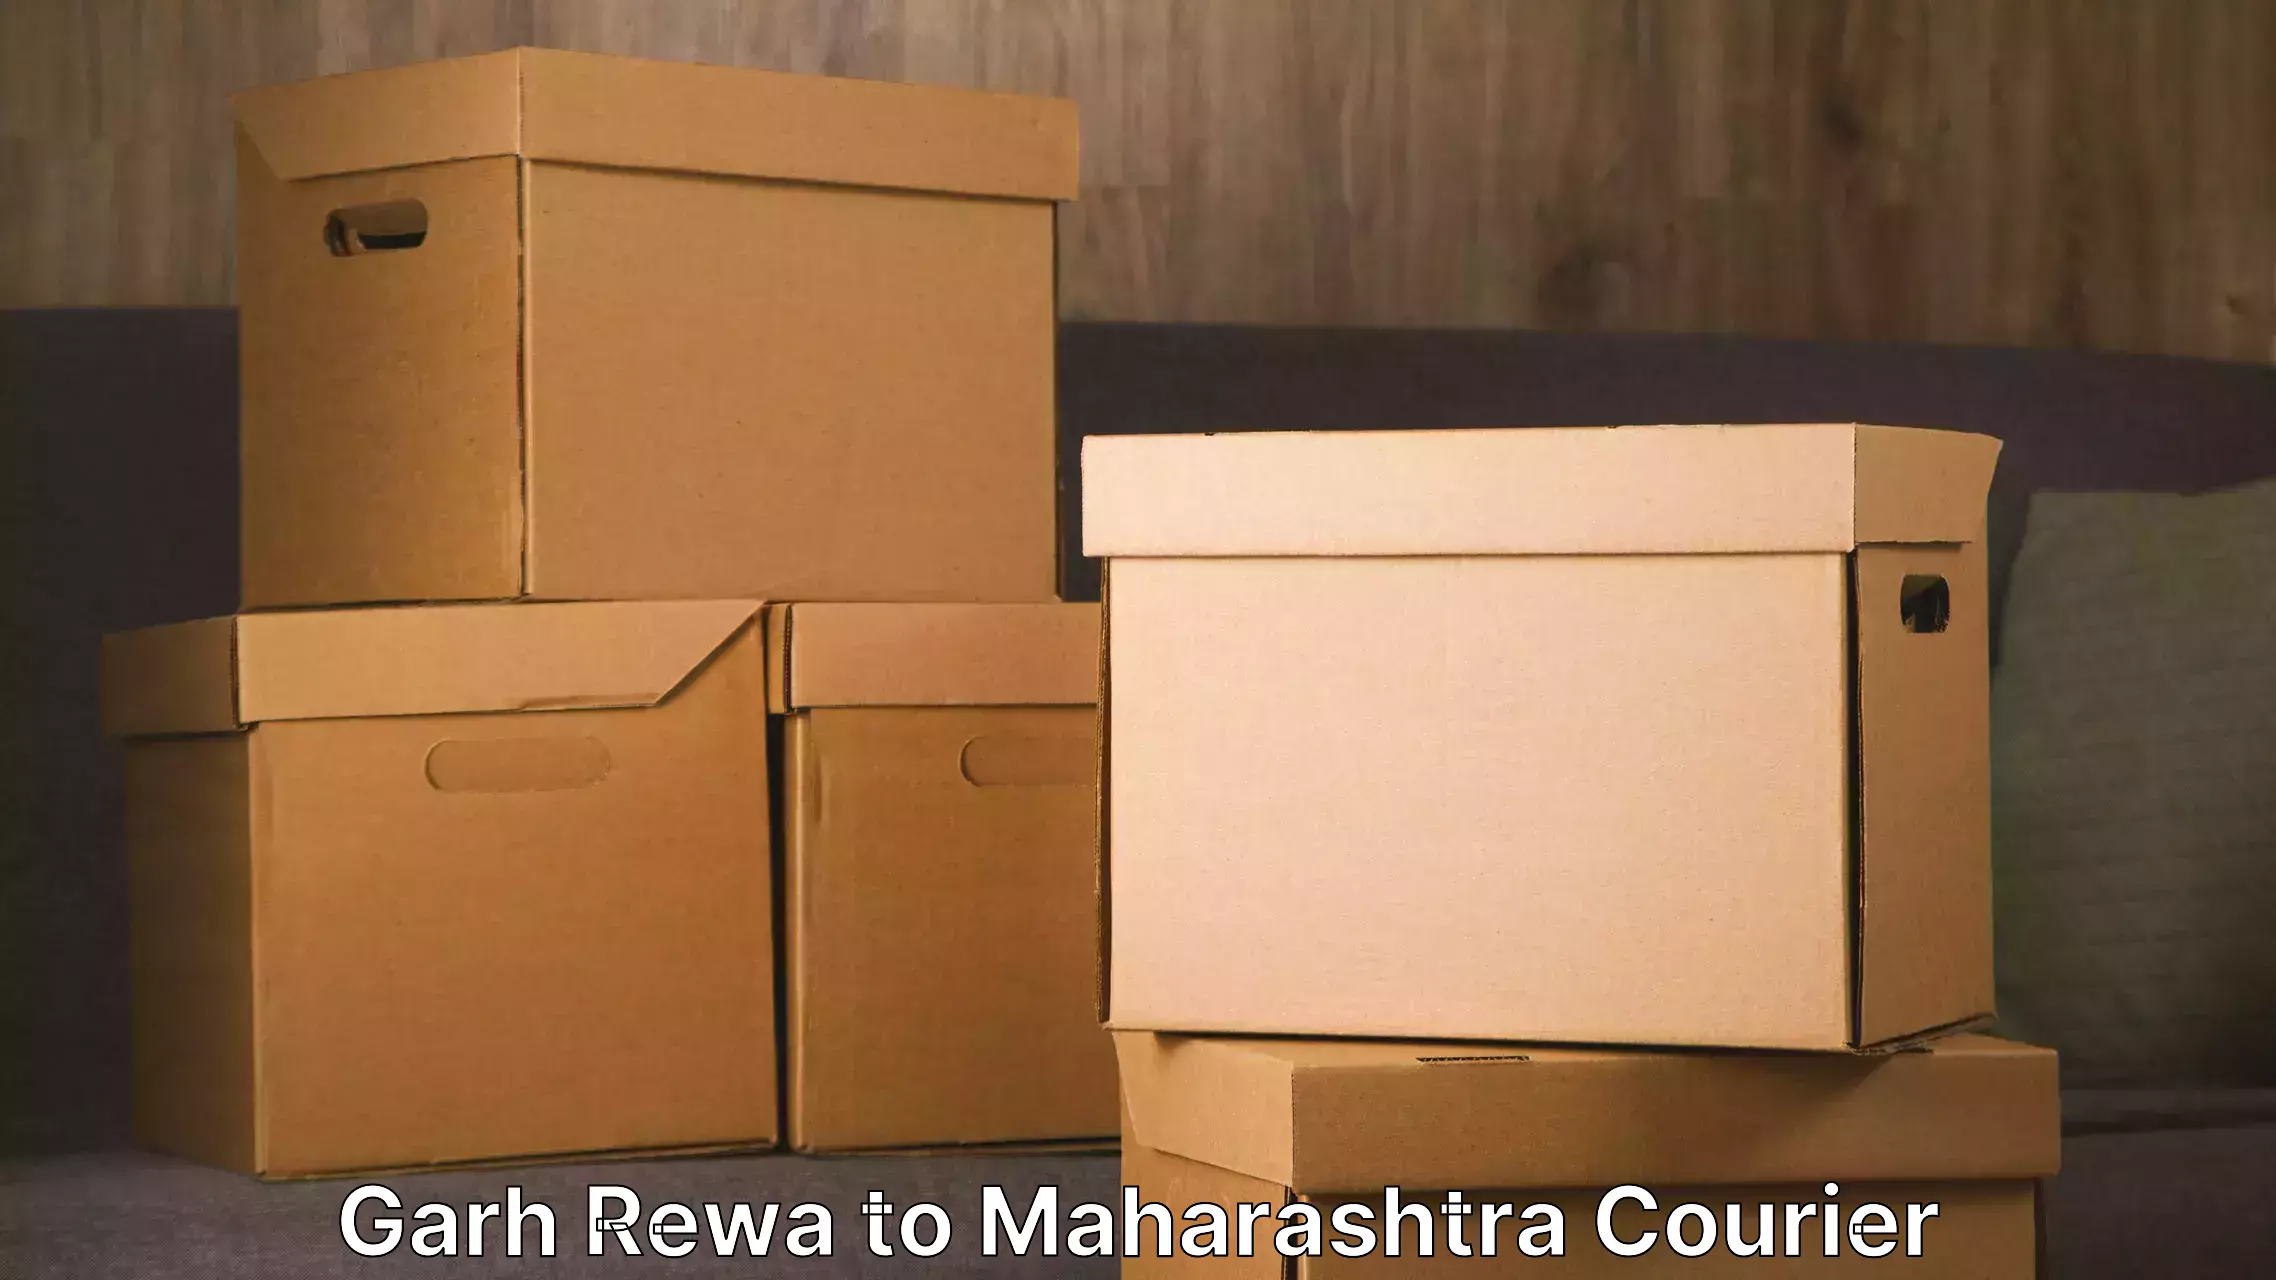 Moving and storage services Garh Rewa to Walchandnagar